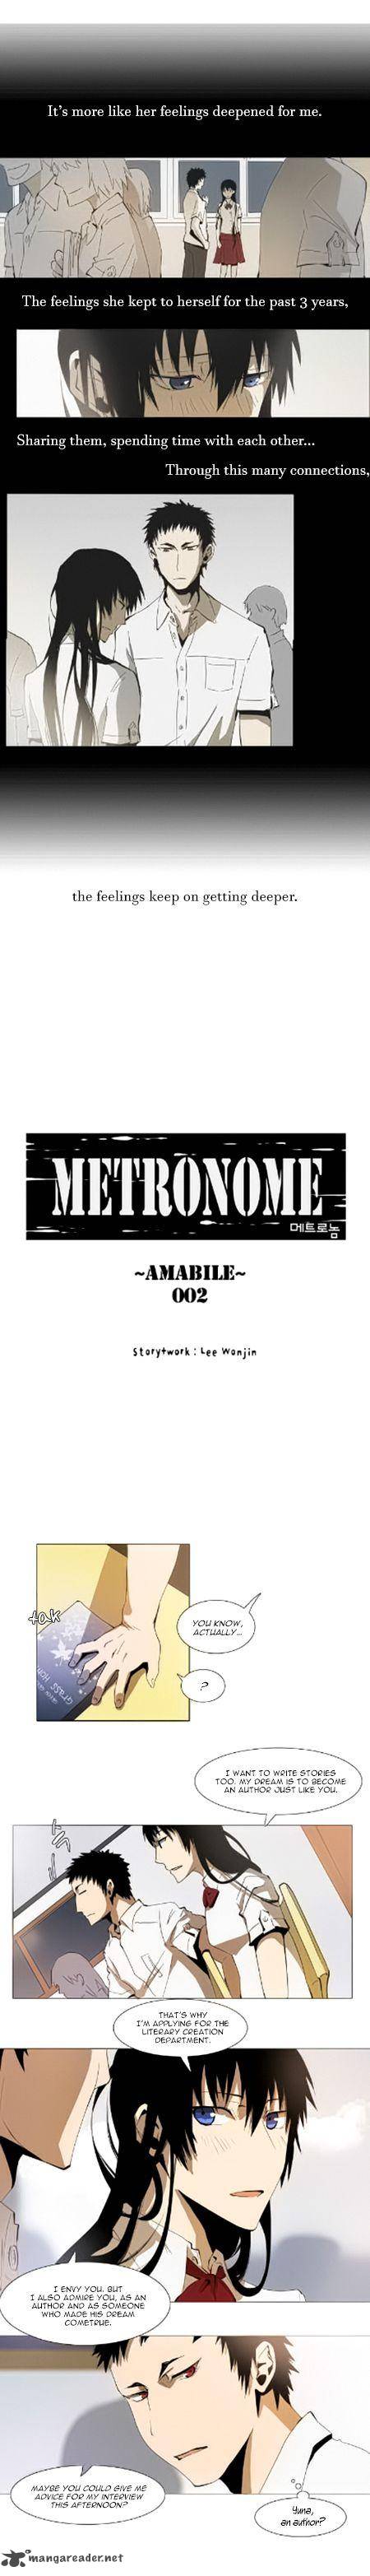 Metronome 33 5